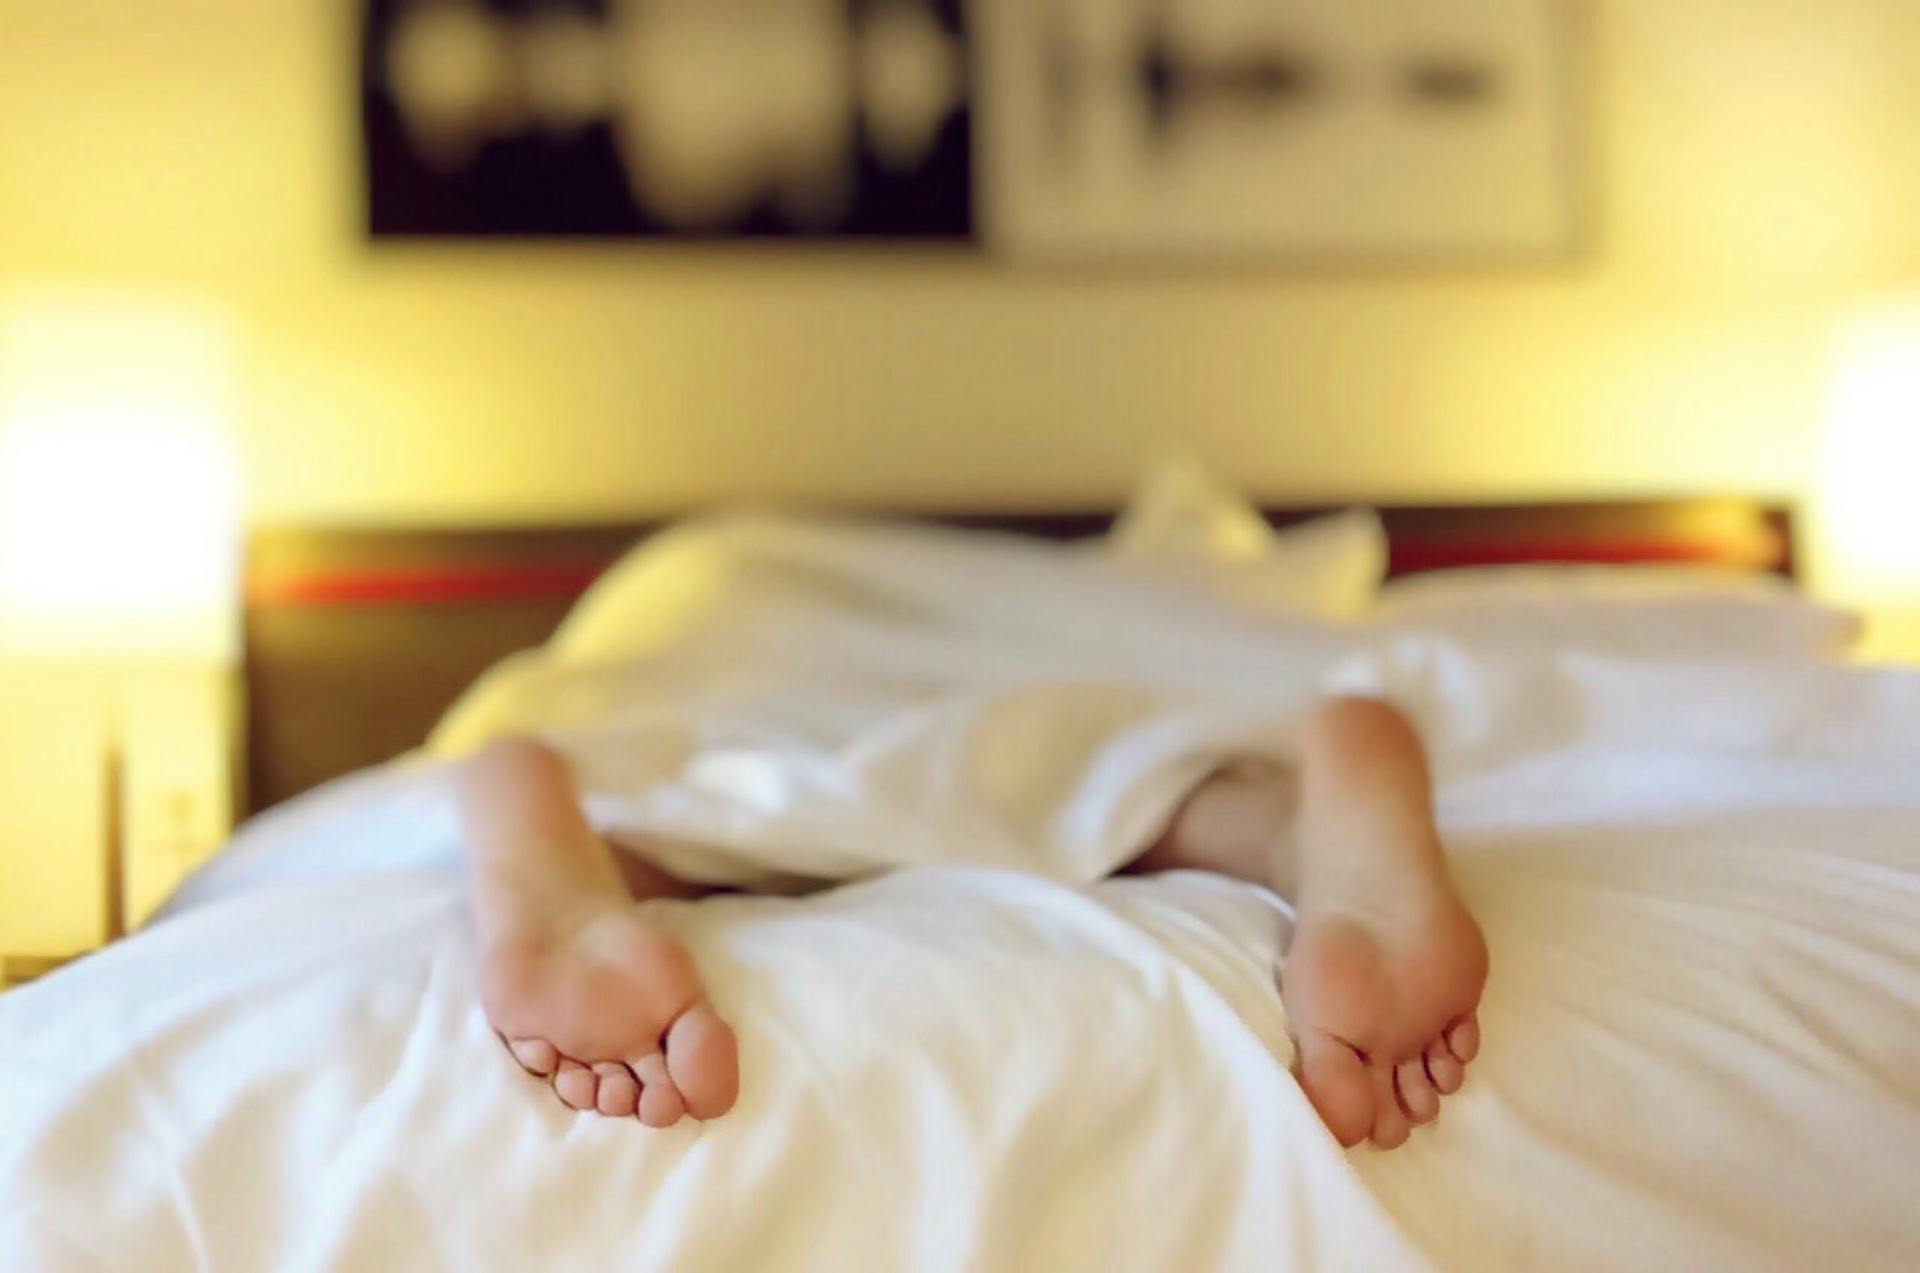 Eine Person liegt mit dem Gesicht nach unten auf einem Bett | Quelle: Pexels